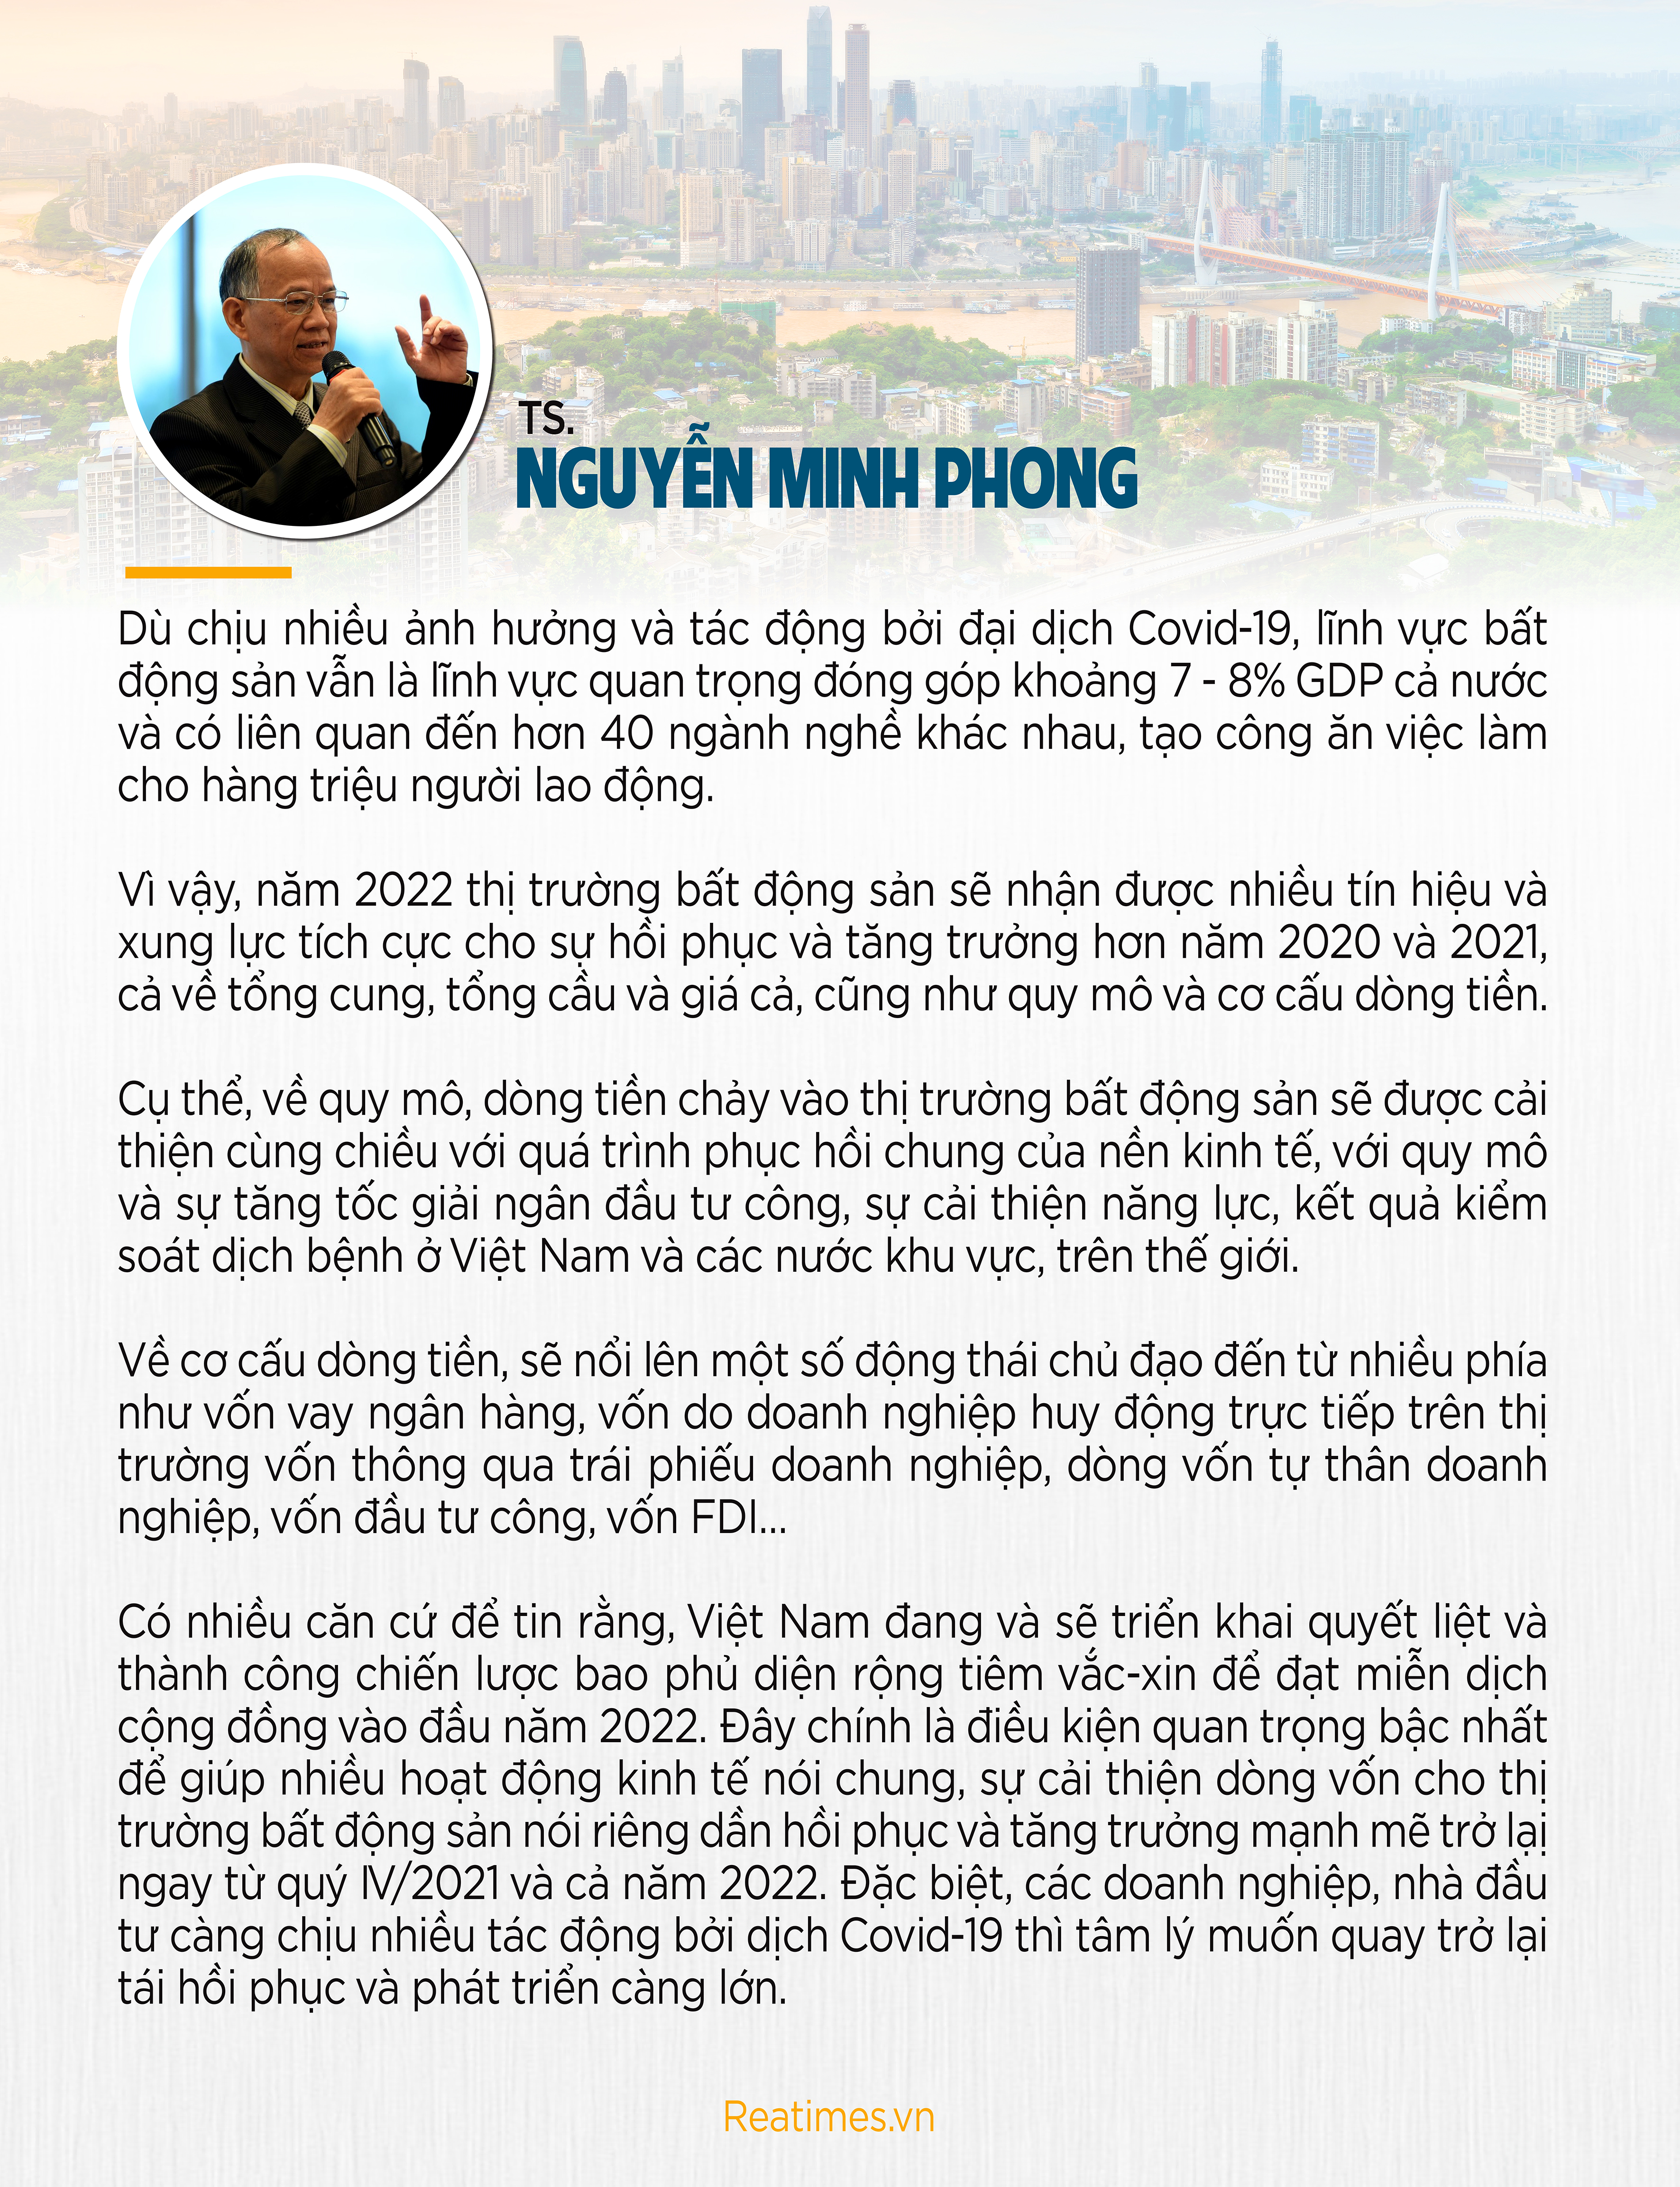 Nguyễn Minh Phong